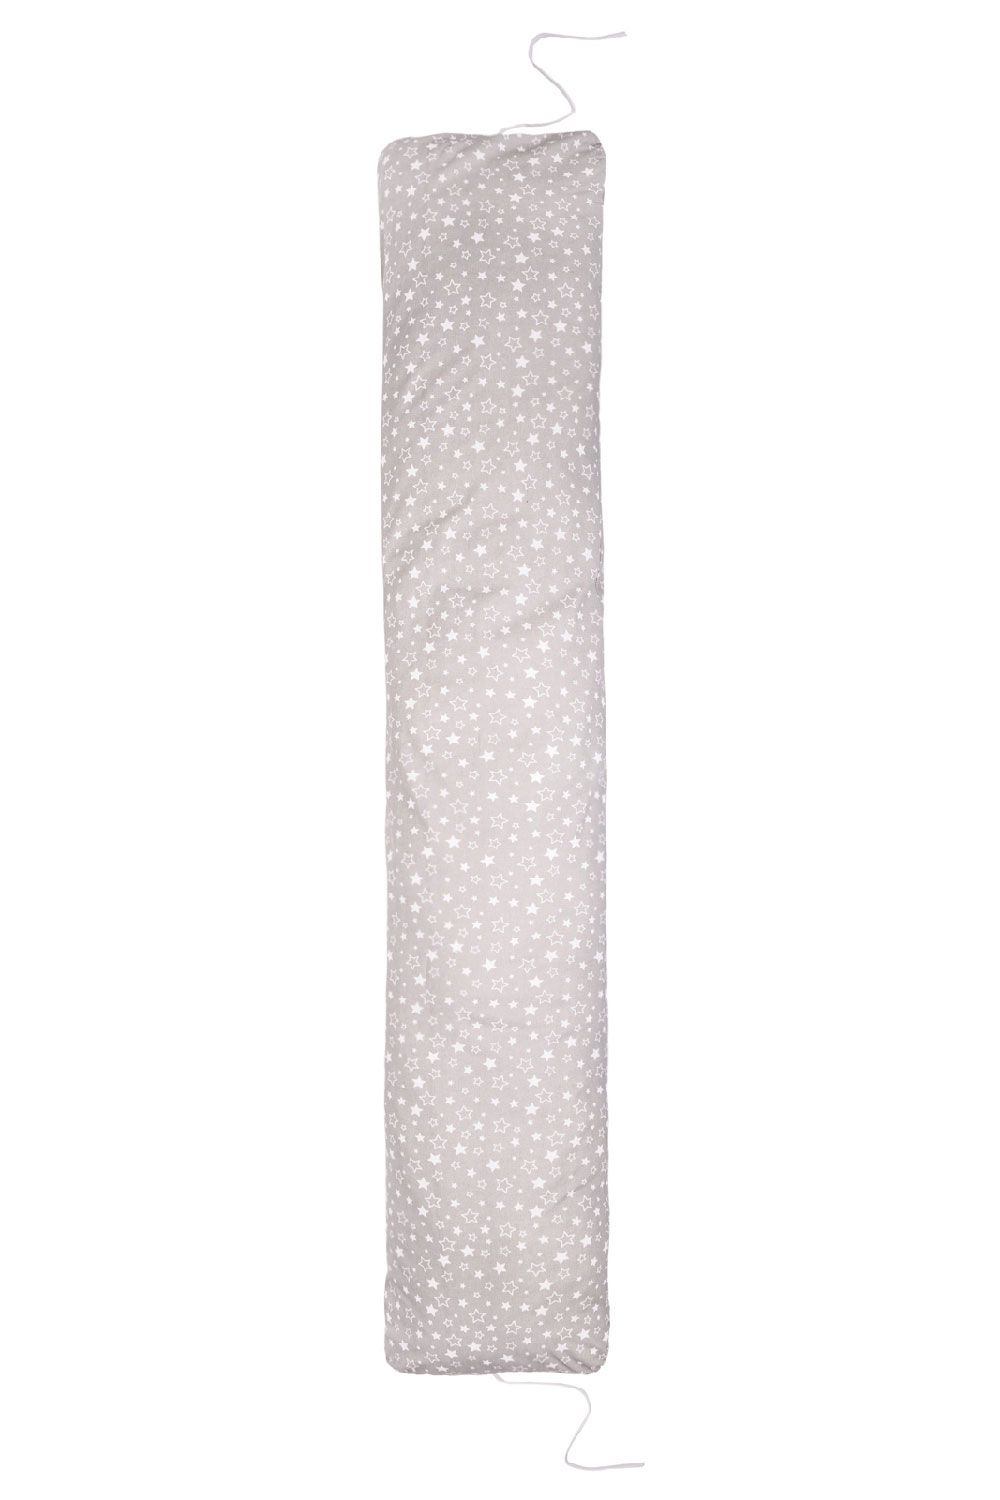 Подушка I-образная для беременных арт.4981 - Звездное небо серый